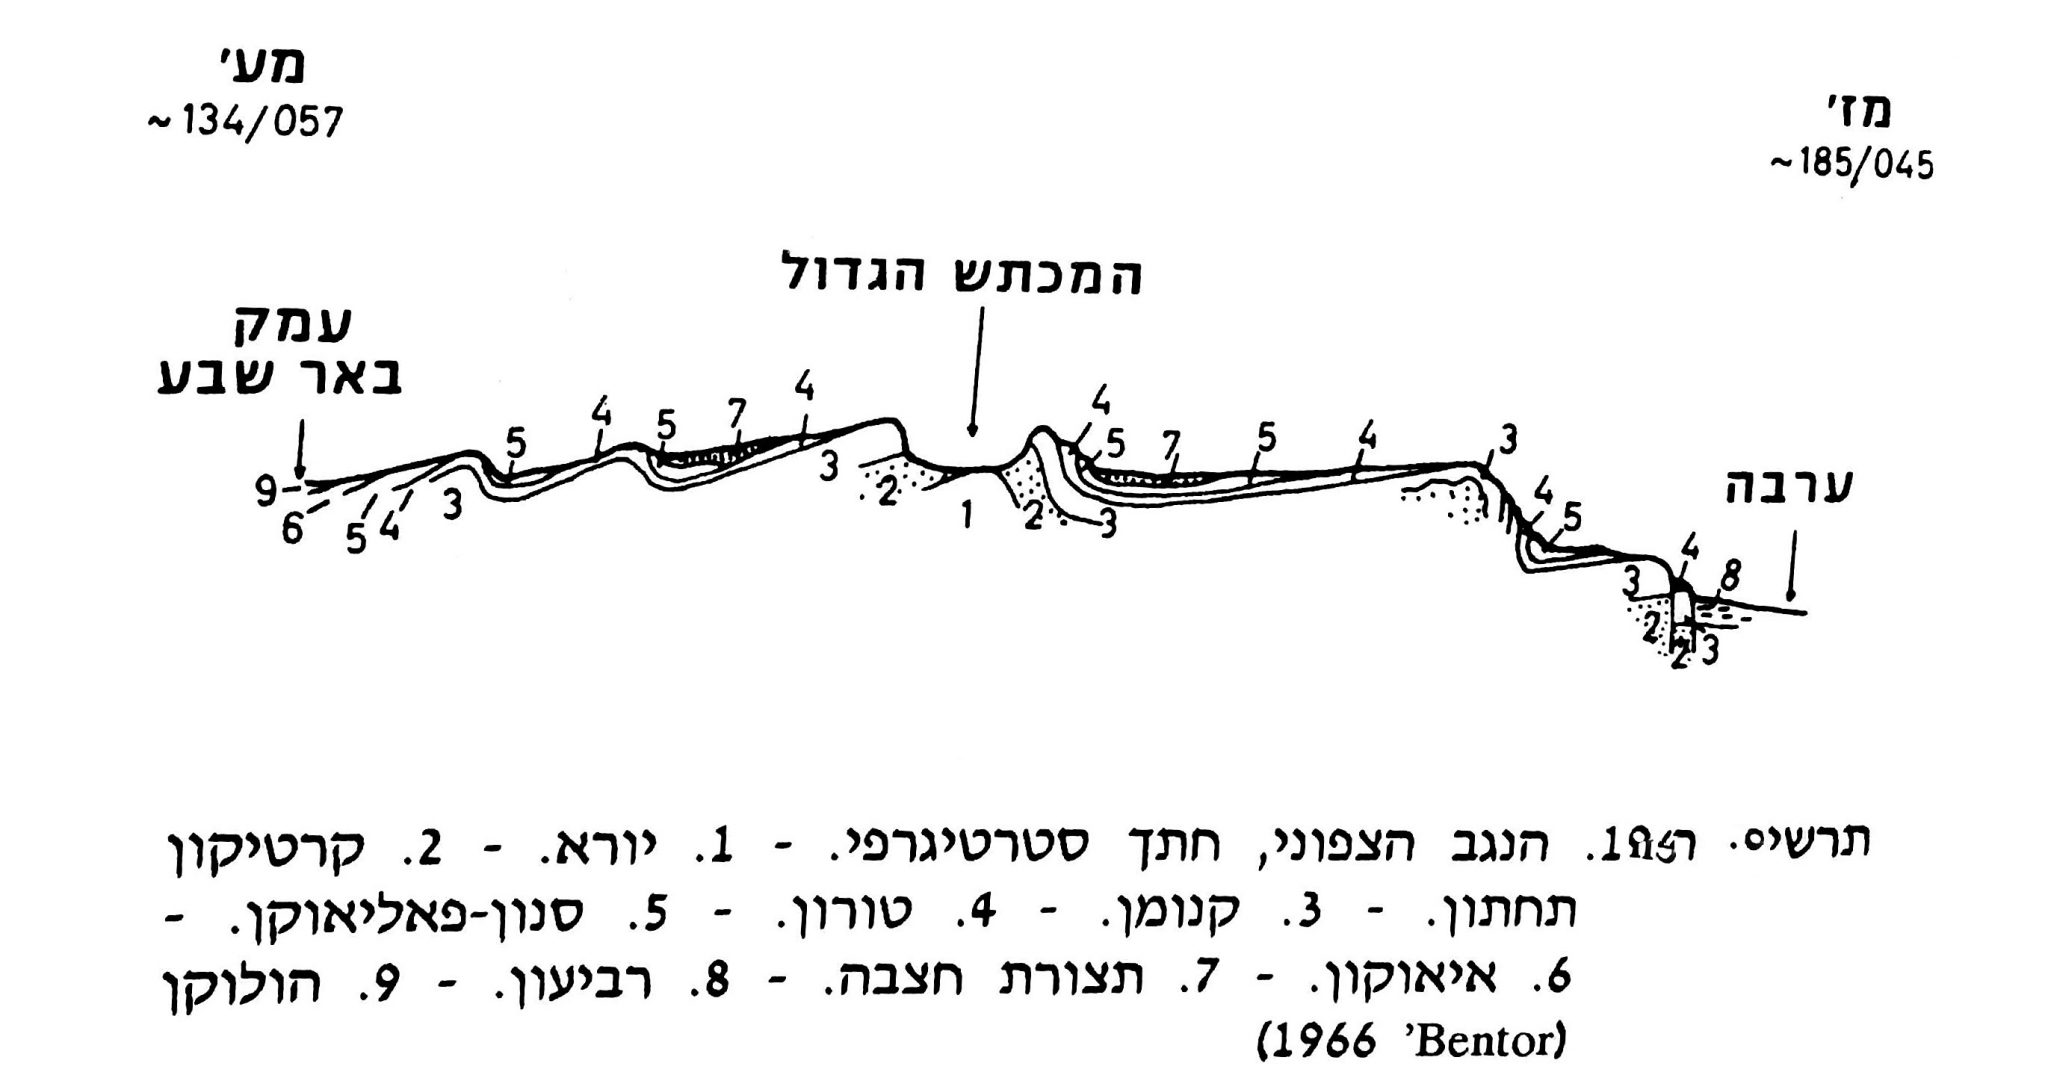 תרשים חתך במכתש גדול (גיאומורפולוגיה של ארץ ישראל, ד' ניר 1989, עמ' 181)